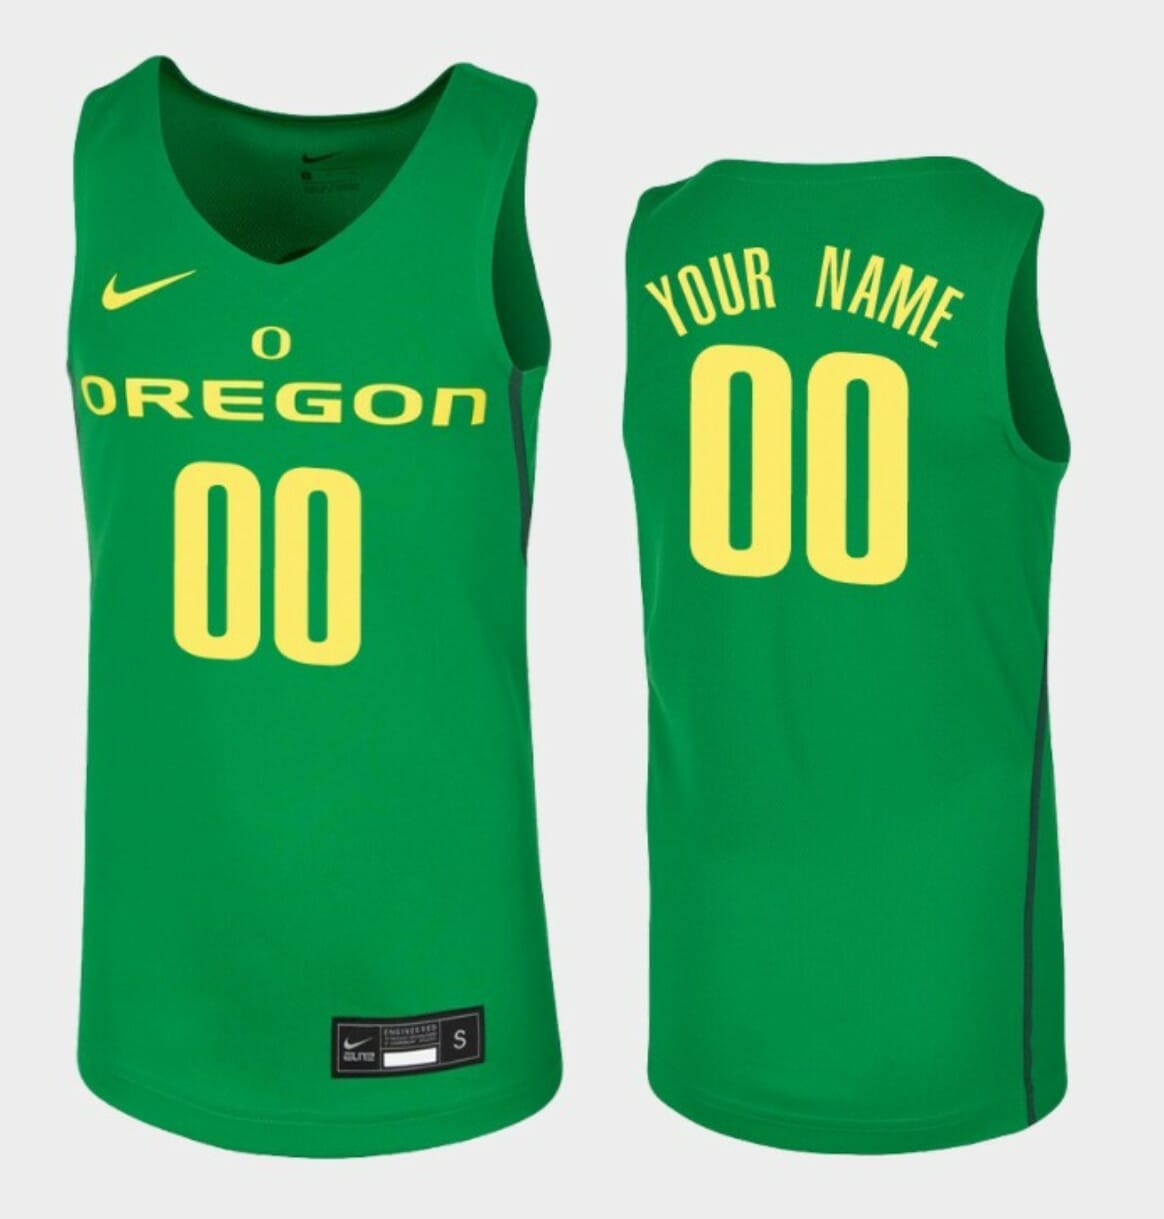 Oregon Basketball Jerseys, Oregon Basketball Jersey Deals